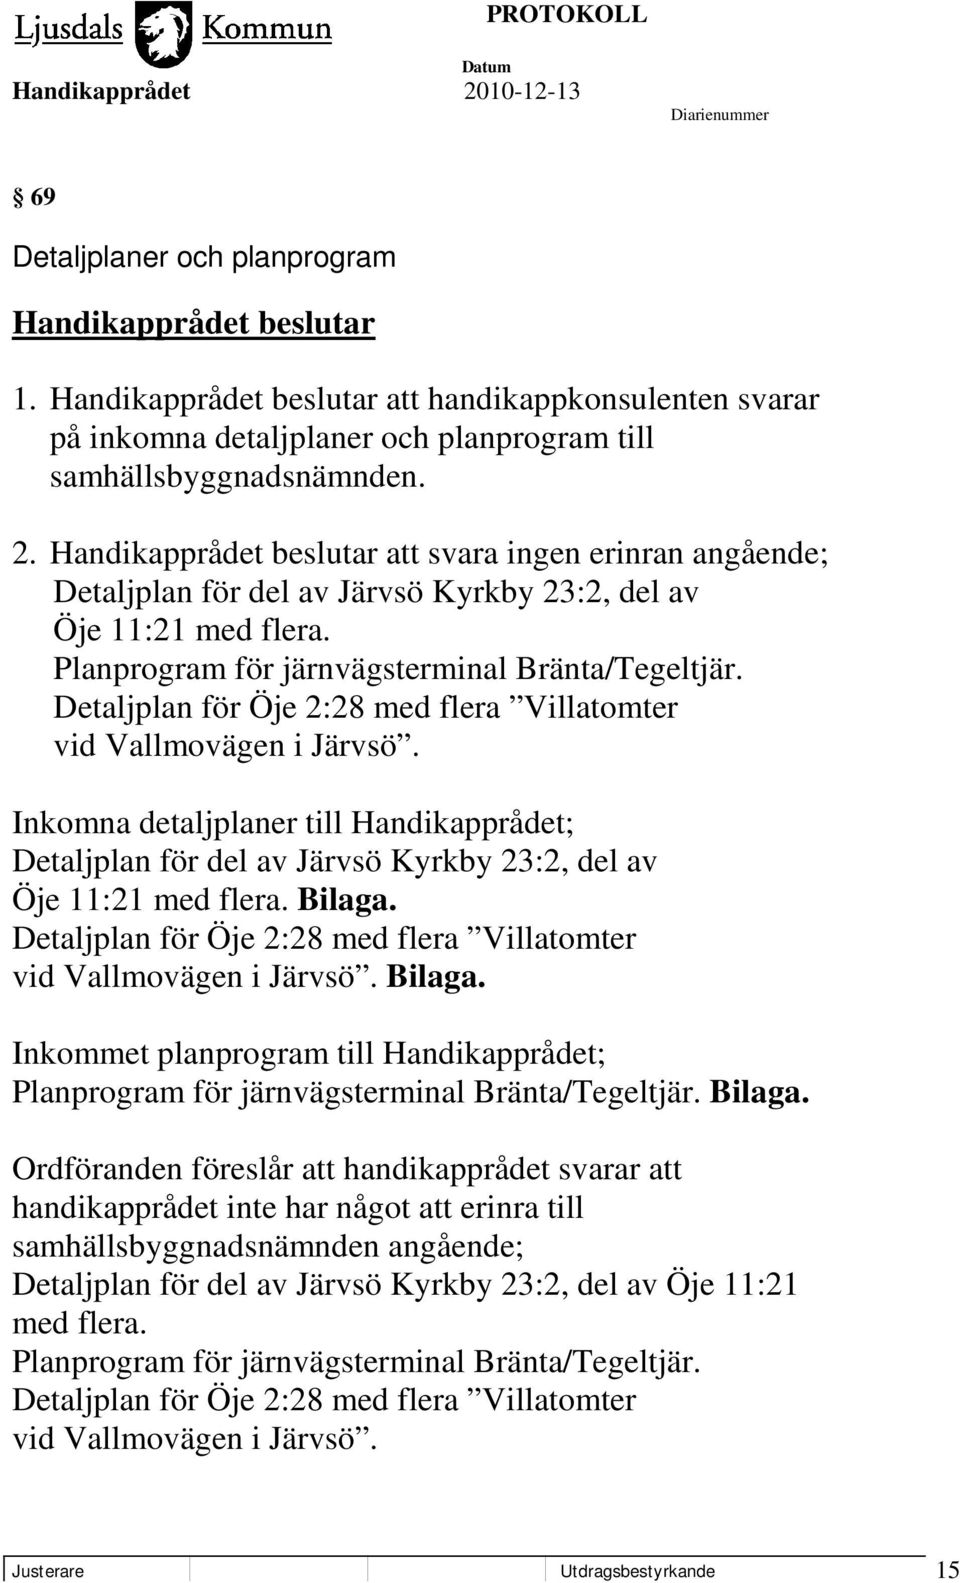 Detaljplan för Öje 2:28 med flera Villatomter vid Vallmovägen i Järvsö. Inkomna detaljplaner till Handikapprådet; Detaljplan för del av Järvsö Kyrkby 23:2, del av Öje 11:21 med flera. Bilaga.